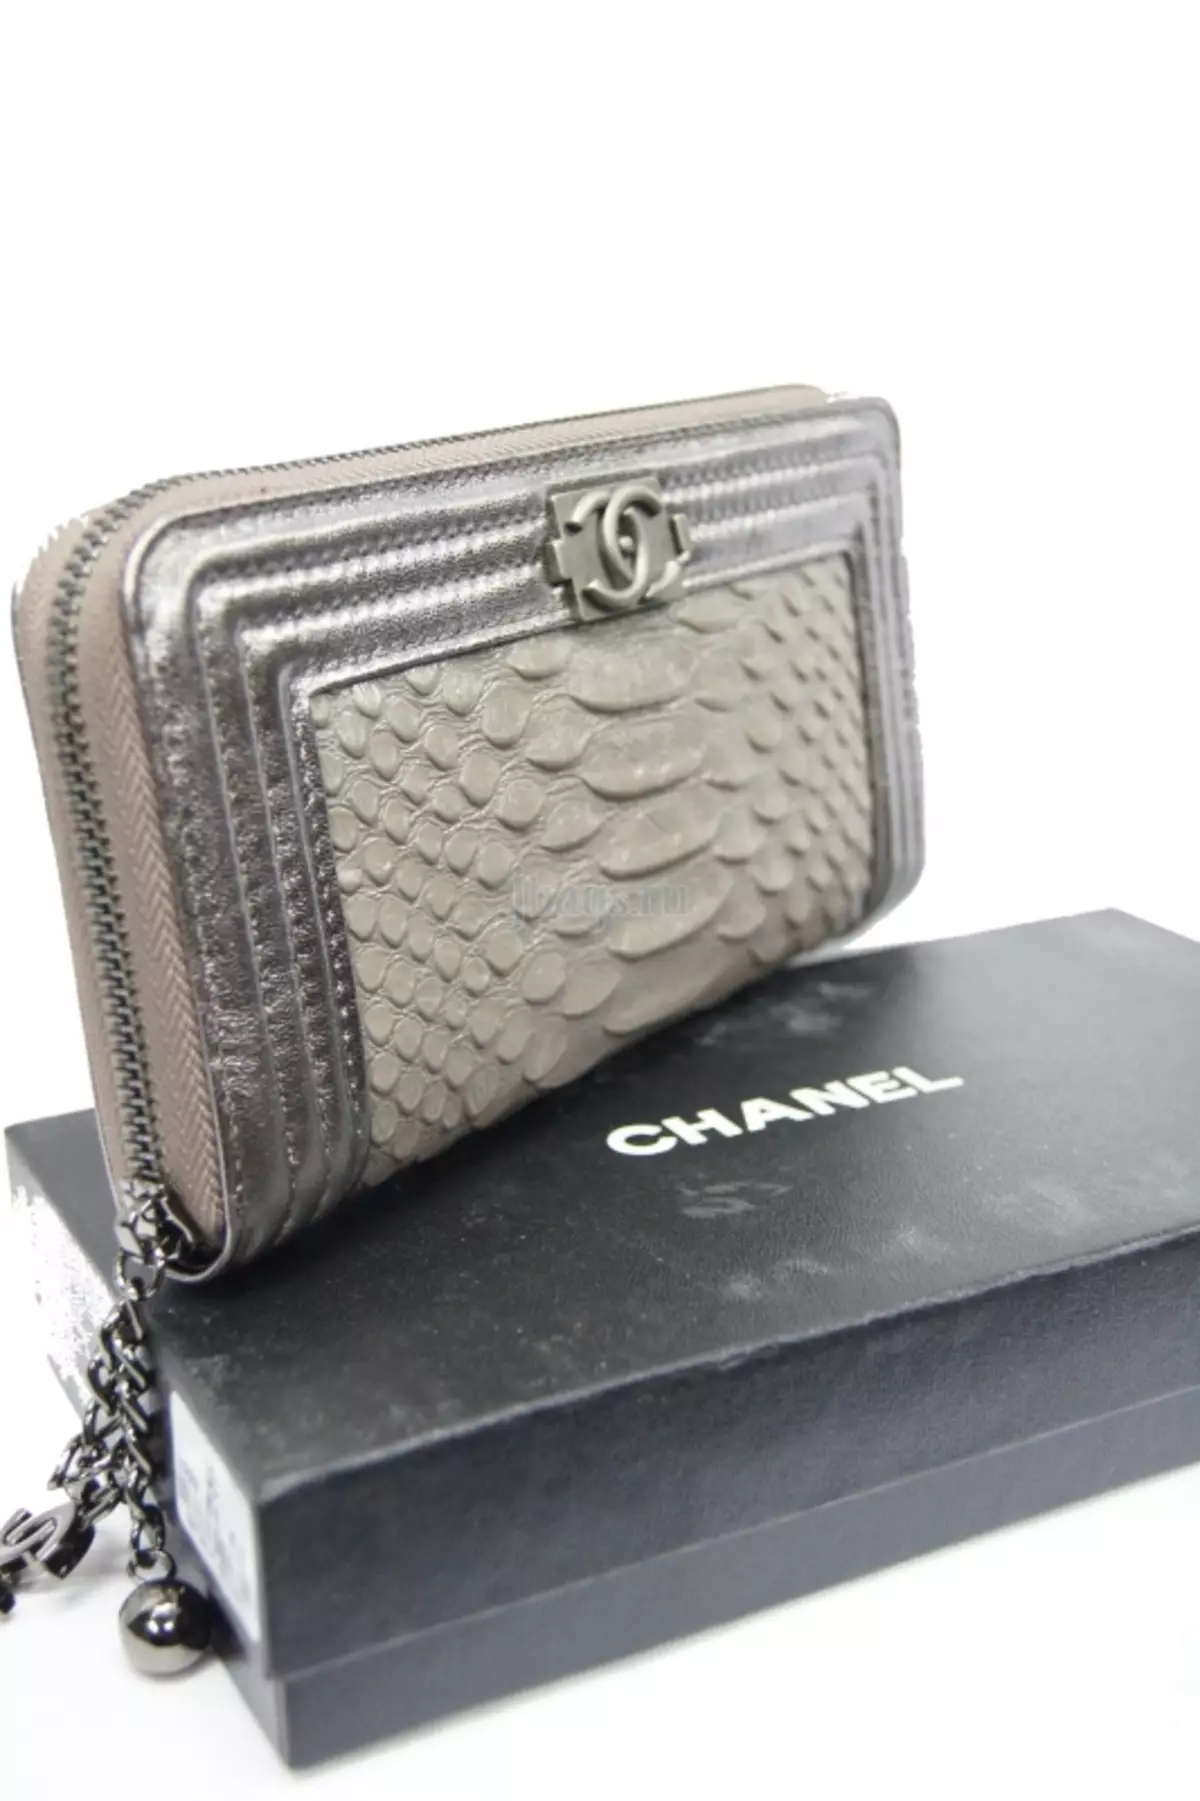 Wallet Chanel (ဓာတ်ပုံ 35 ခု) - အမျိုးသမီးပိုက်ဆံအိတ်နှင့်သားရေအမှတ်တံဆိပ်မော်ဒယ်များ 15156_13